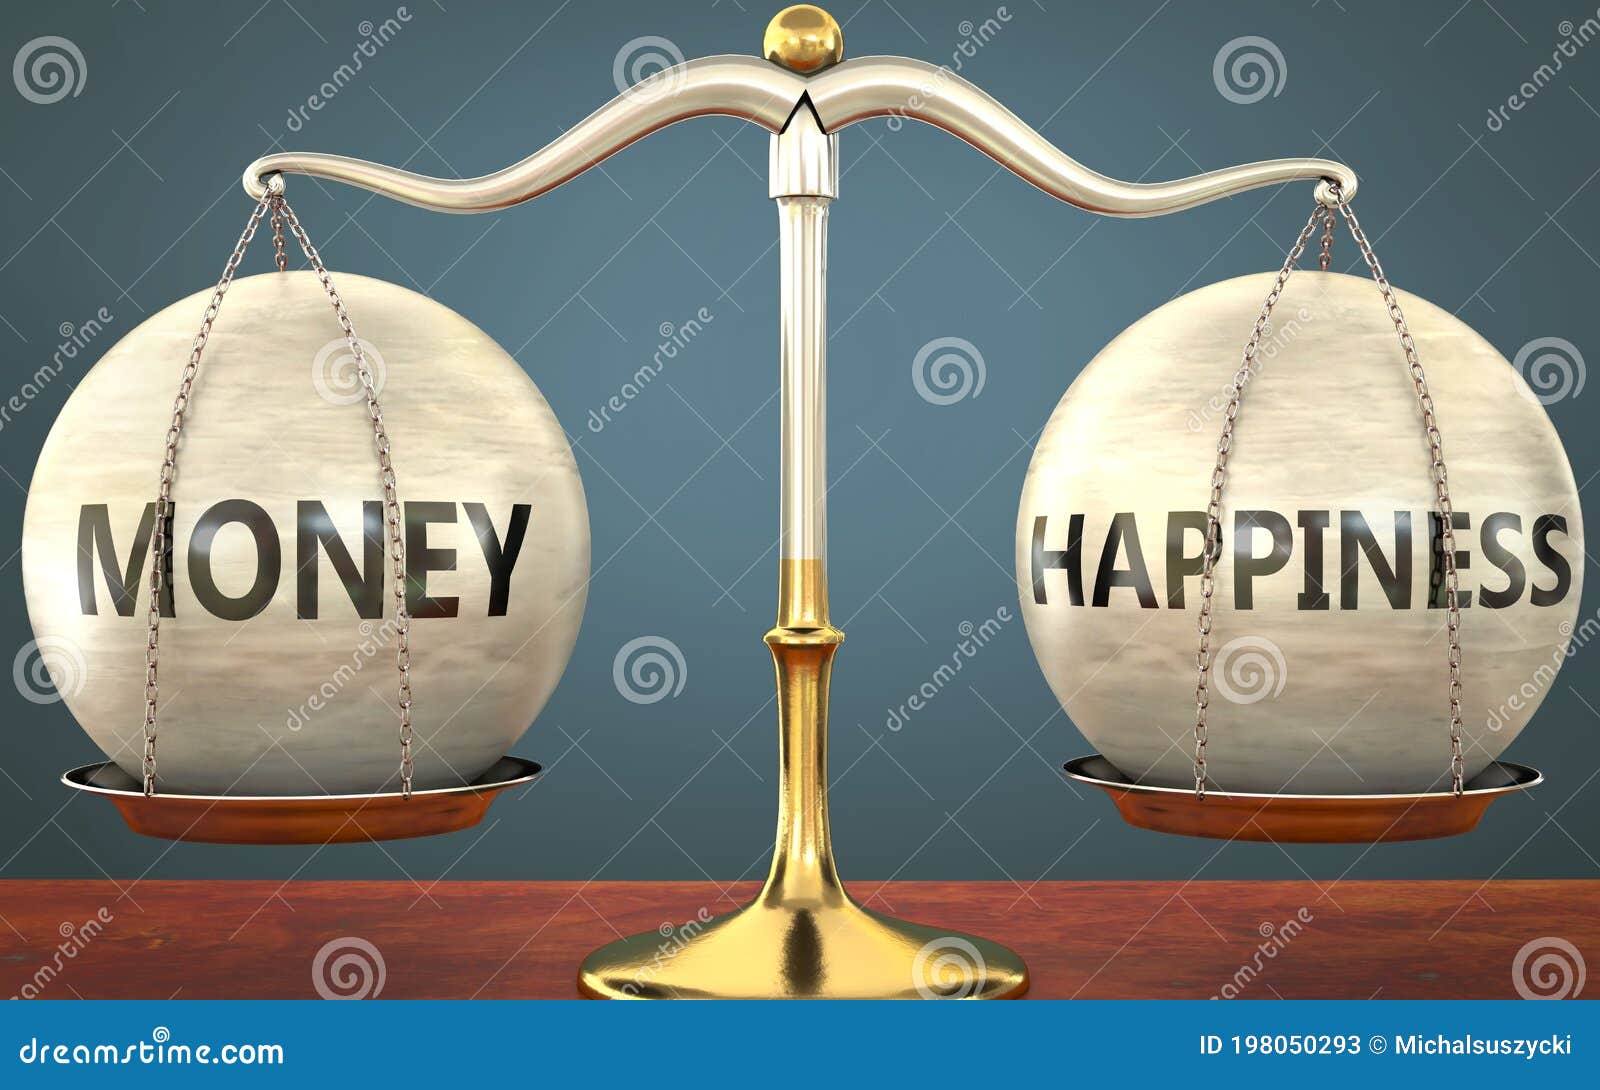 L'argent vecteur de bonheur pour 95 % des Français, selon une